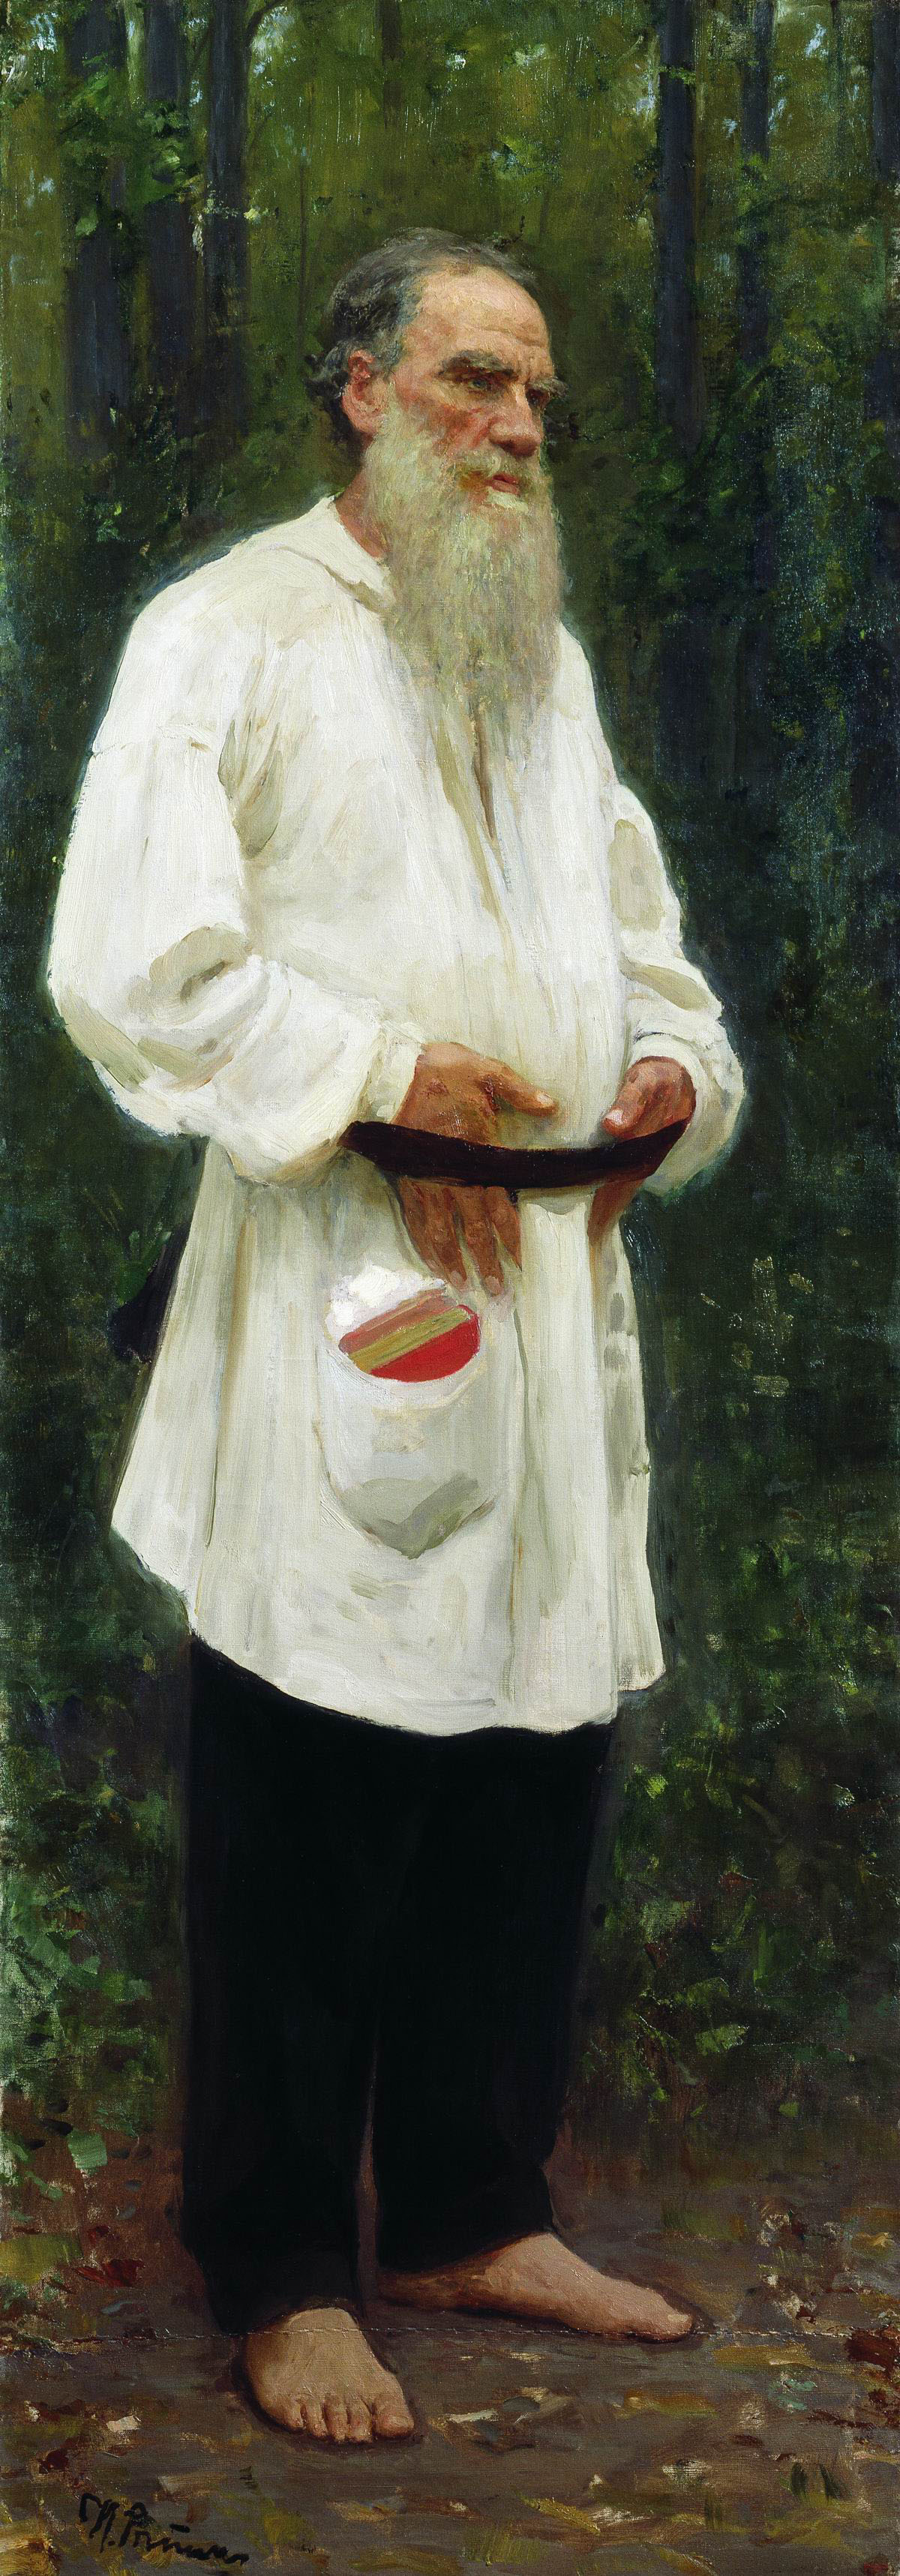 「裸足のレフ・トルストイ」、イリヤ・レーピン、1901年